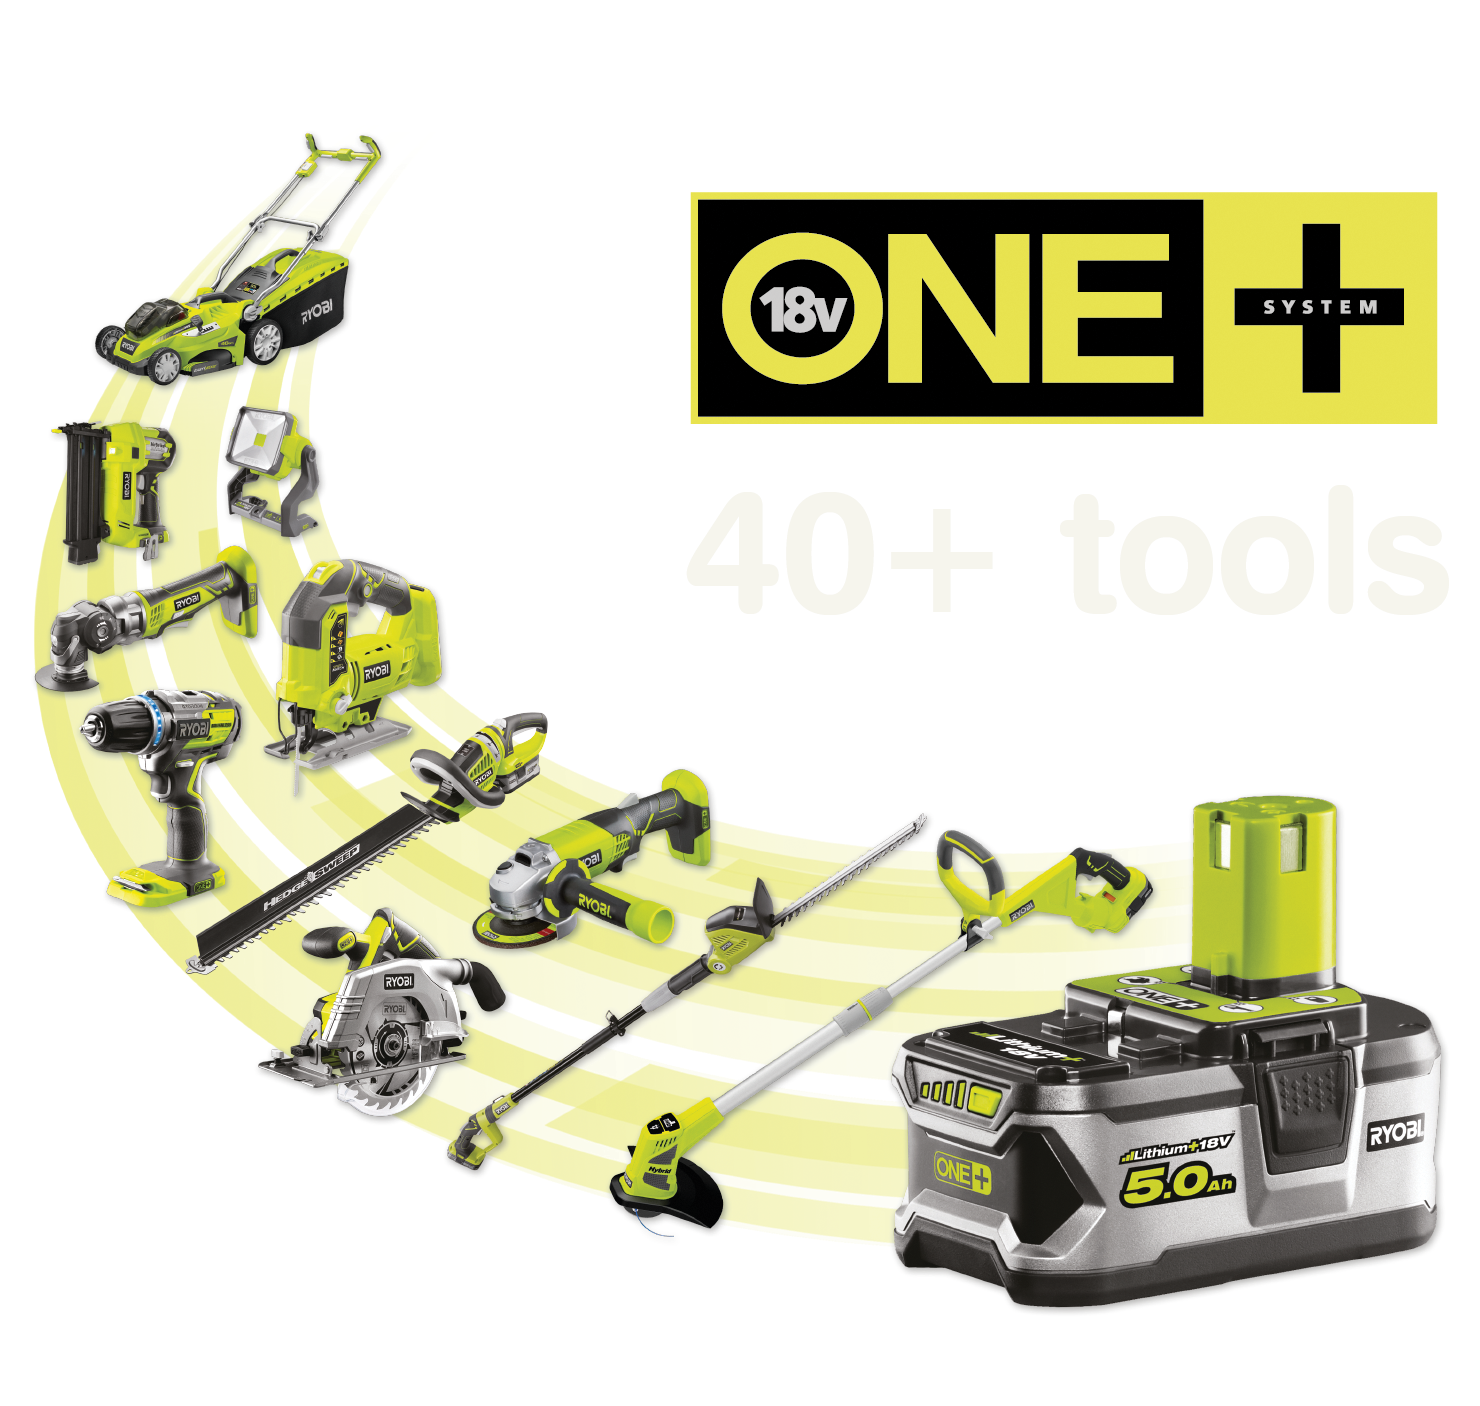 Over 40+ værktøjer drevet af det samme ONE+ batteri